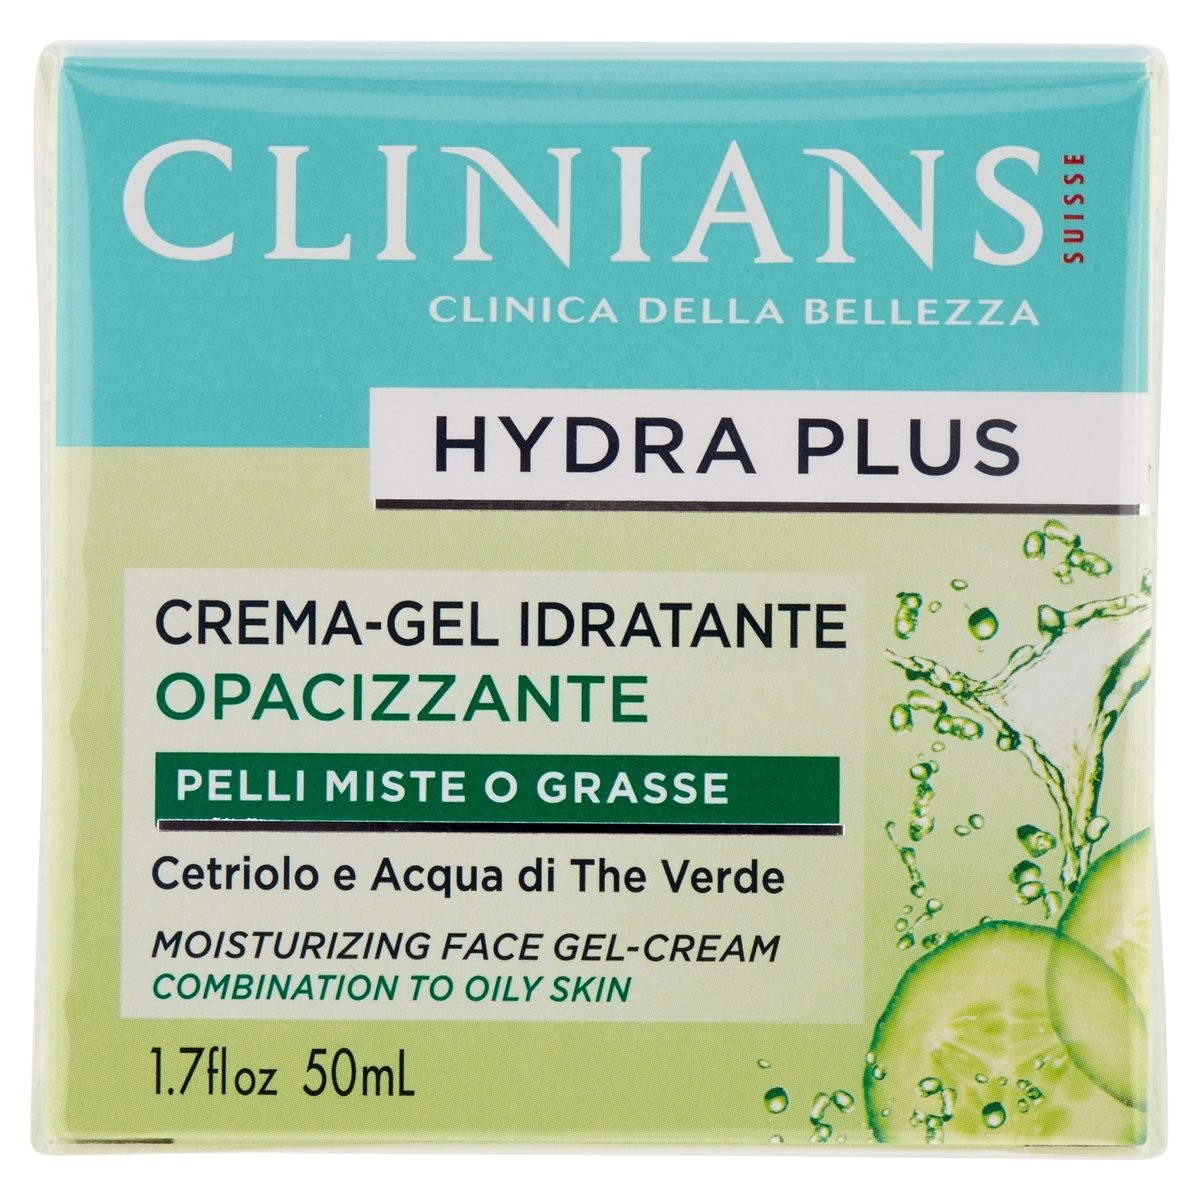 Clinians Crema-Gel viso Hydra Plus